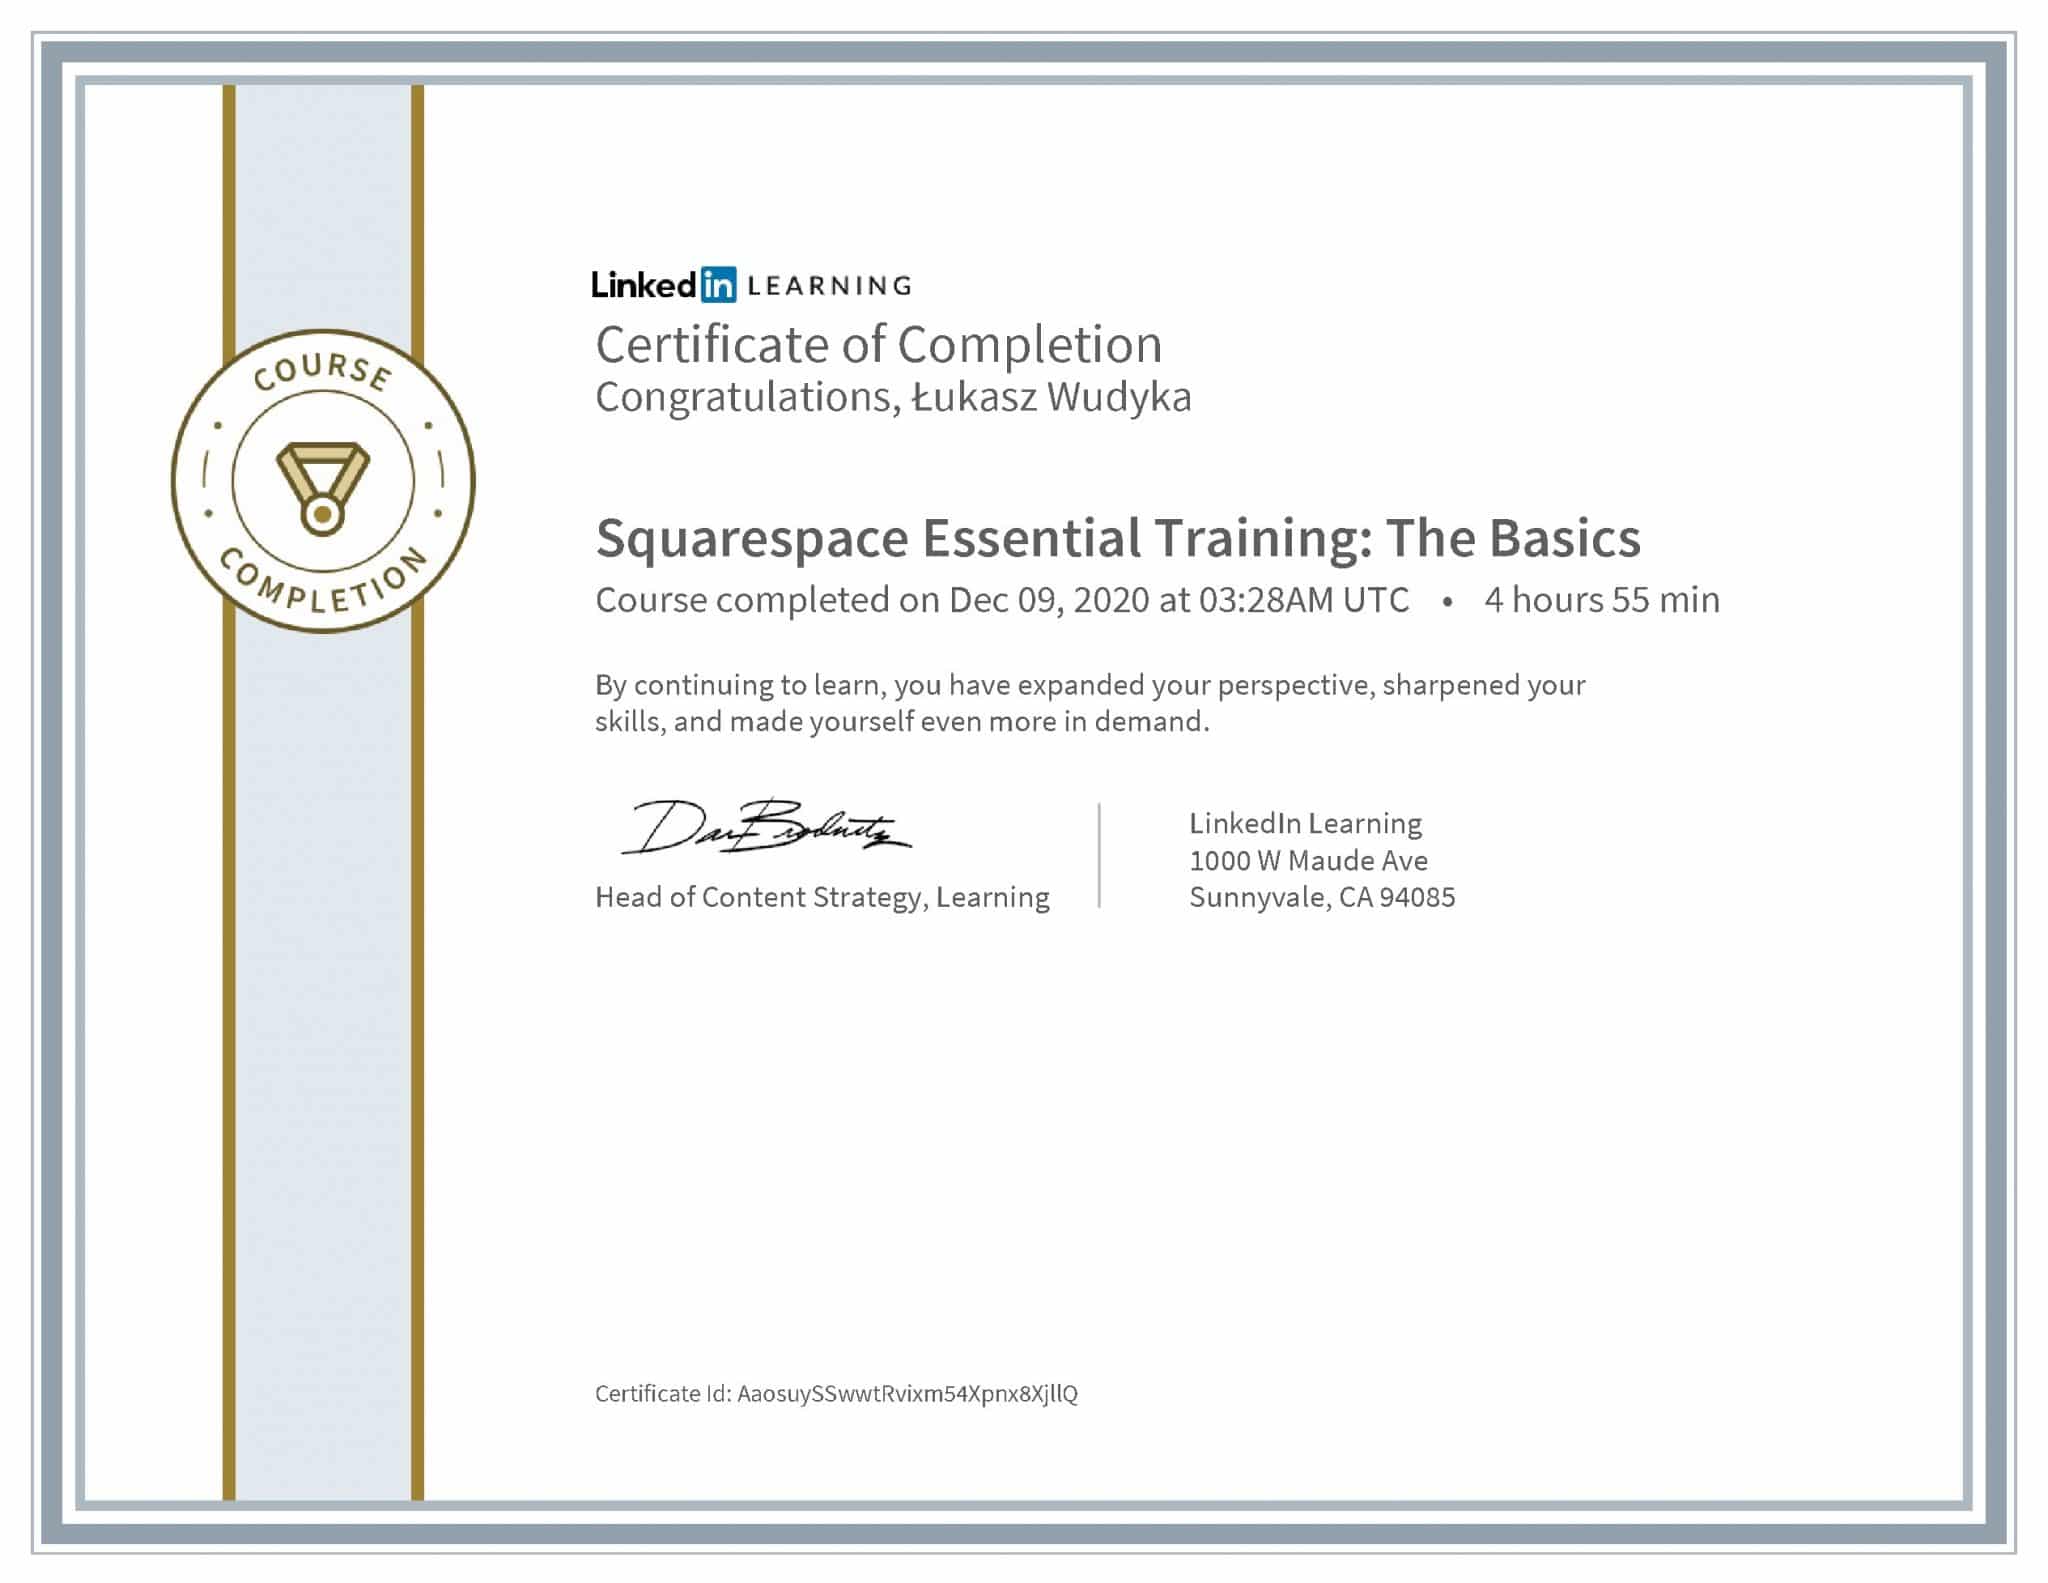 Łukasz Wudyka certyfikat LinkedIn Squarespace Essential Training: The Basics